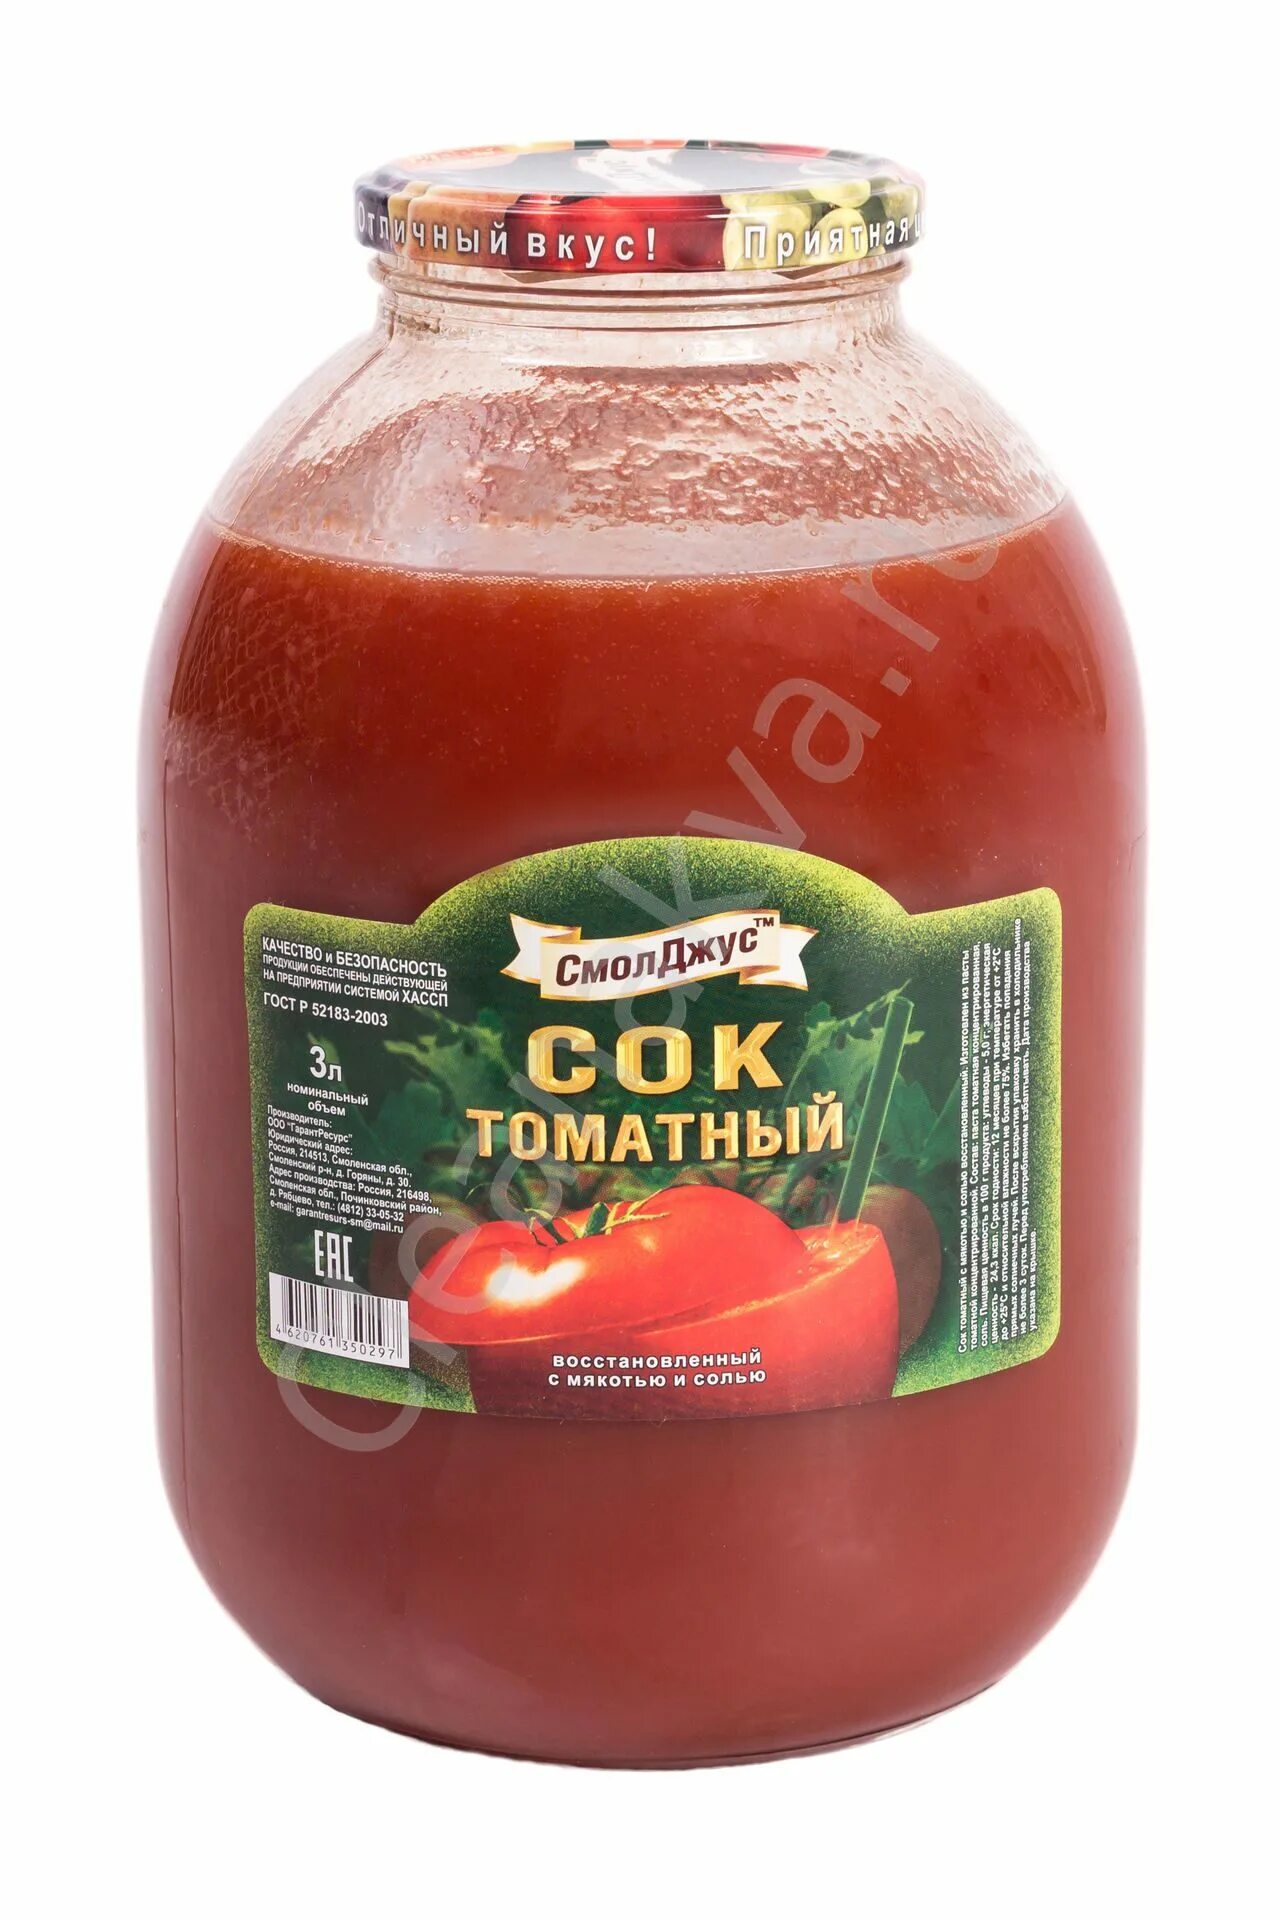 Купить сок литровый. Сок томатный 3 литра. Сок томатный московские соки 3 литра. Сок Smart томатный 3л. Тихорецкий сок томатный 3 литра.